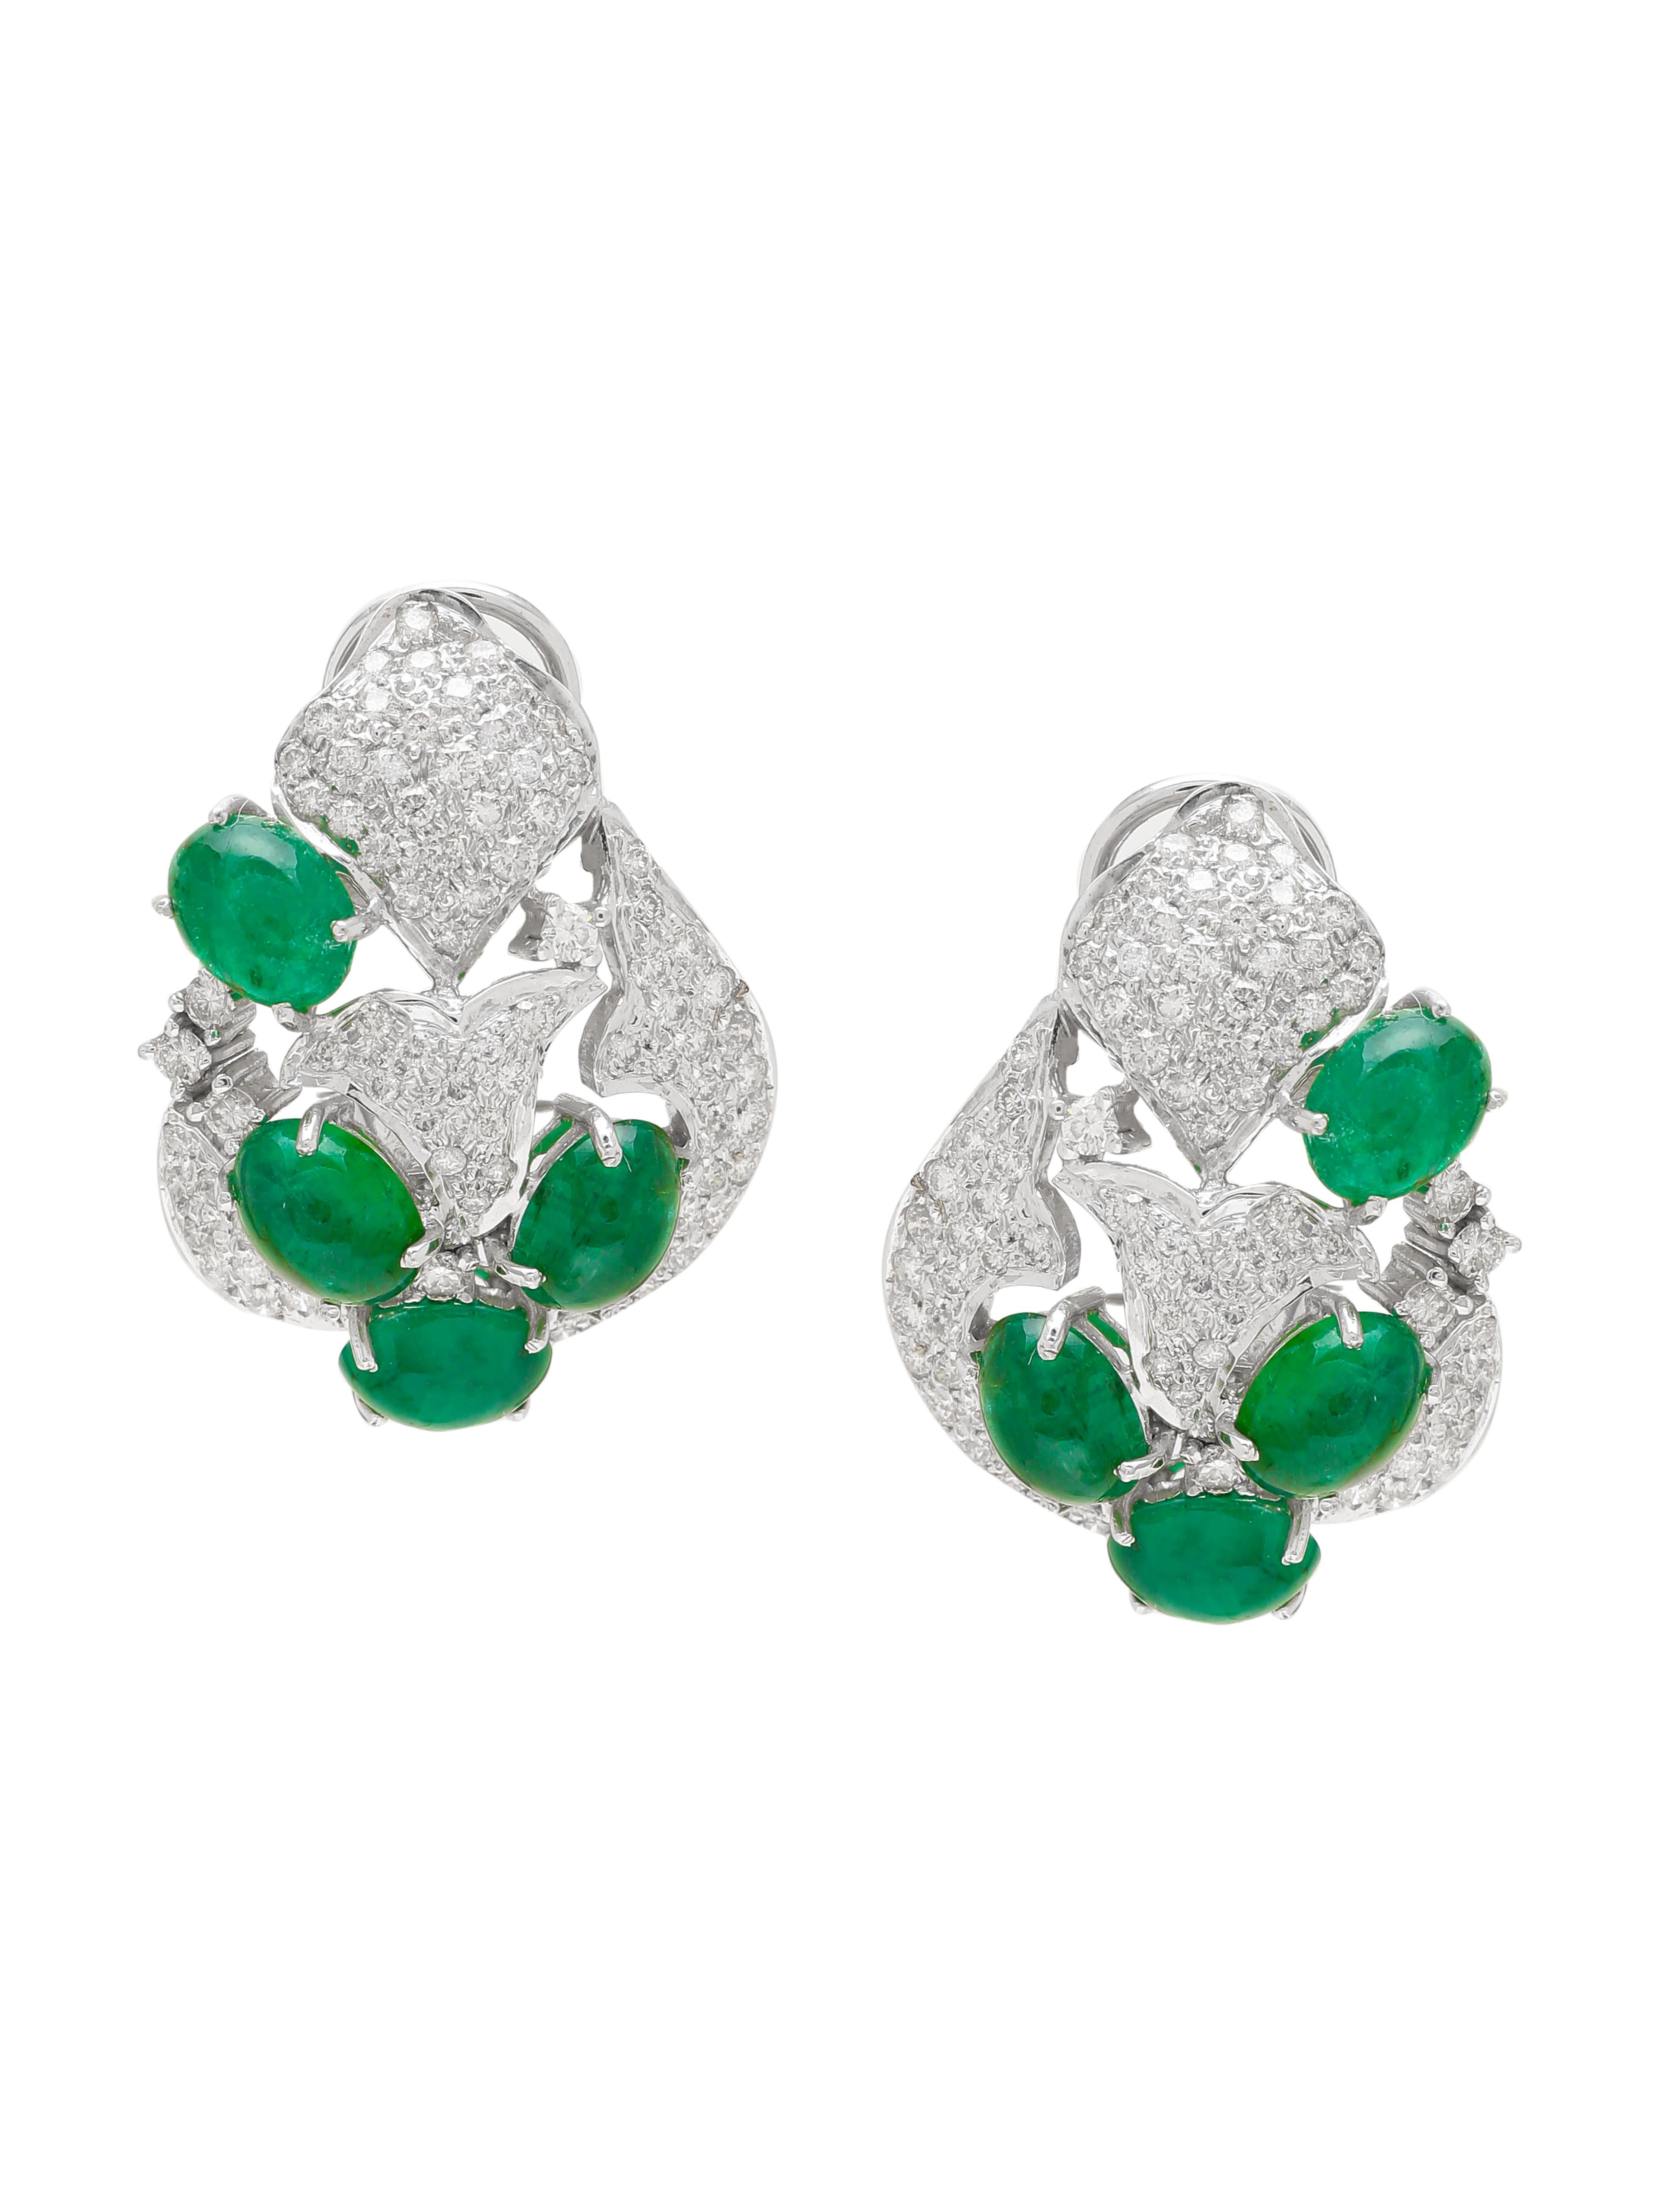 Ein Paar hübsche Ohrstecker mit ovalen Smaragd-Cabochons aus Sambia und kleinen runden Diamanten rundherum. Die Ohrringe sind aus wunderschönem 18-karätigem Weißgold gefertigt. Wir haben Diamanten von wirklich guter Qualität verwendet. Mit den